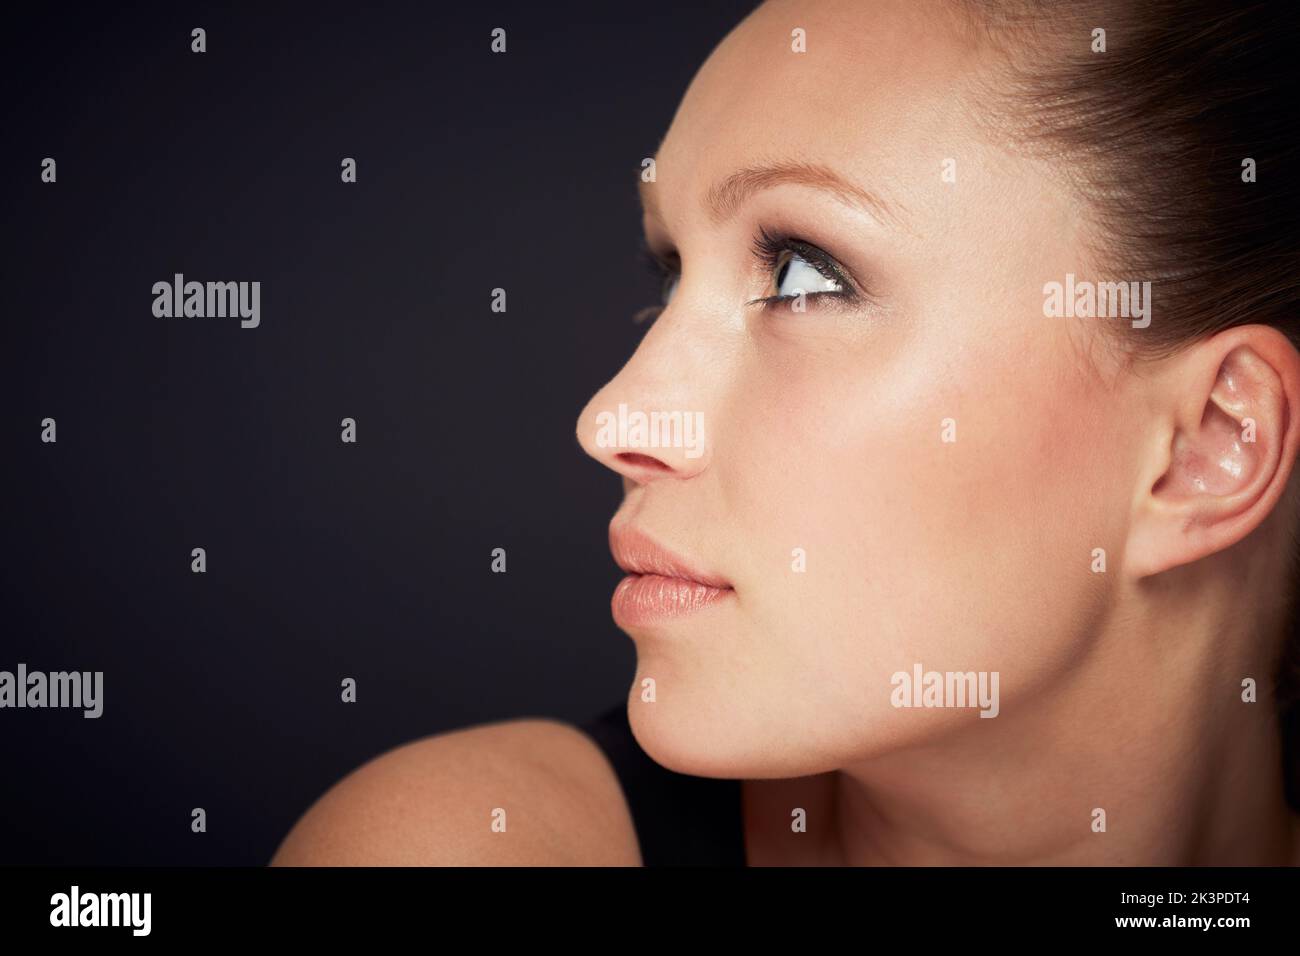 Profil der Schönheit. Kurze Profilaufnahme einer attraktiven jungen Frau, die wegschaut. Stockfoto